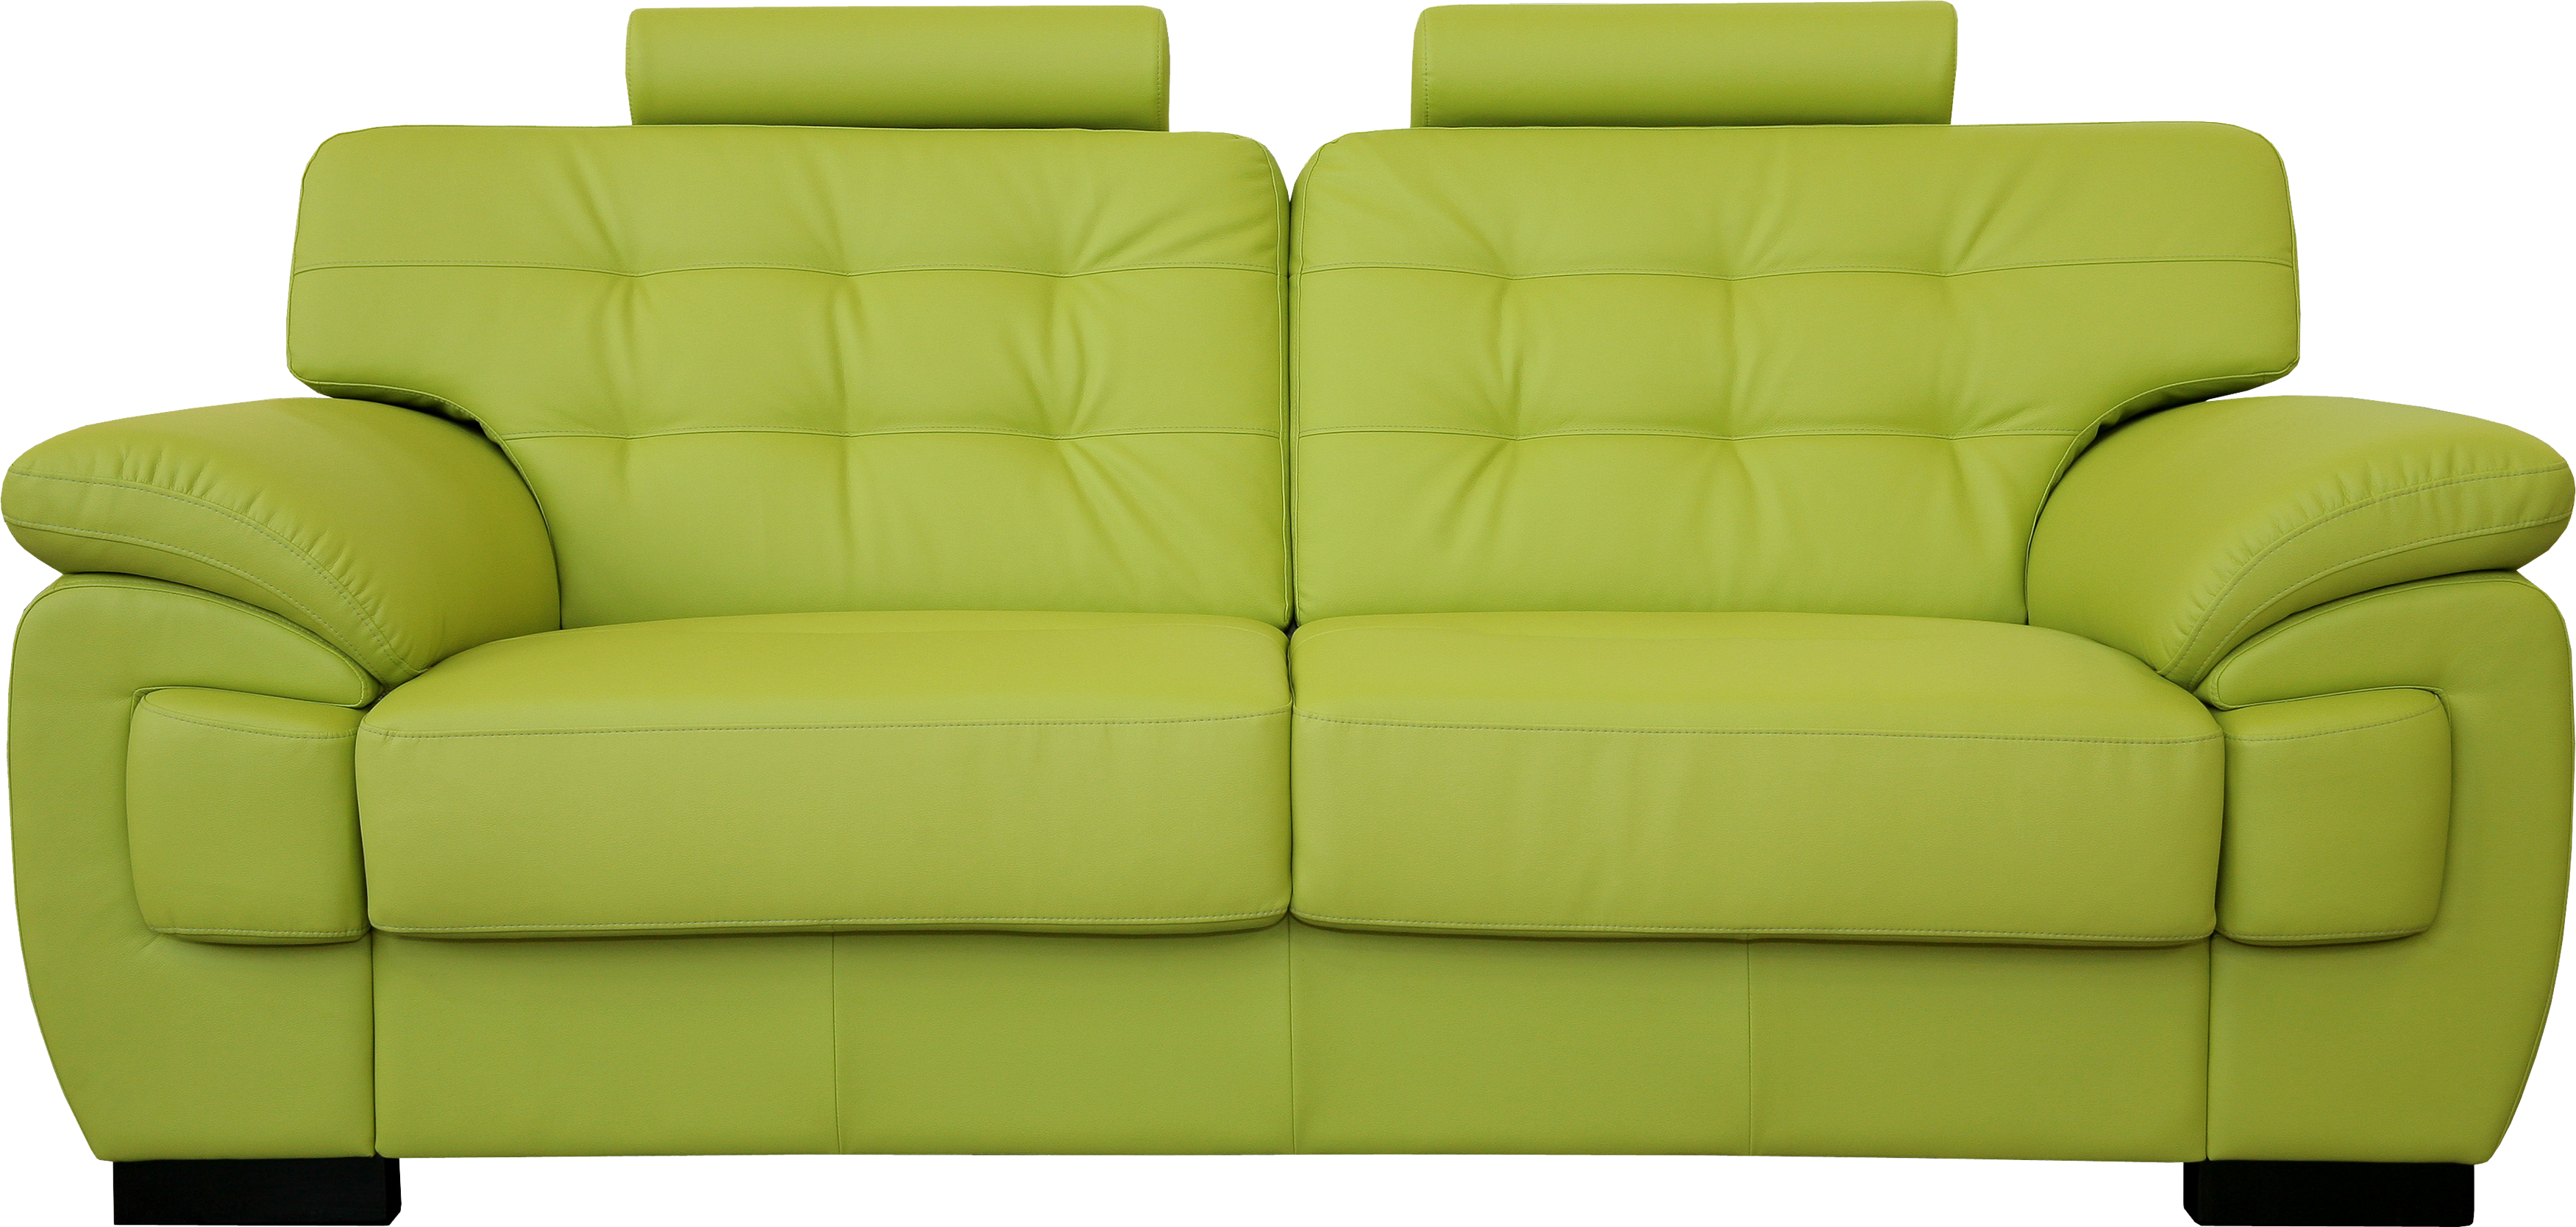 Sofa hijau